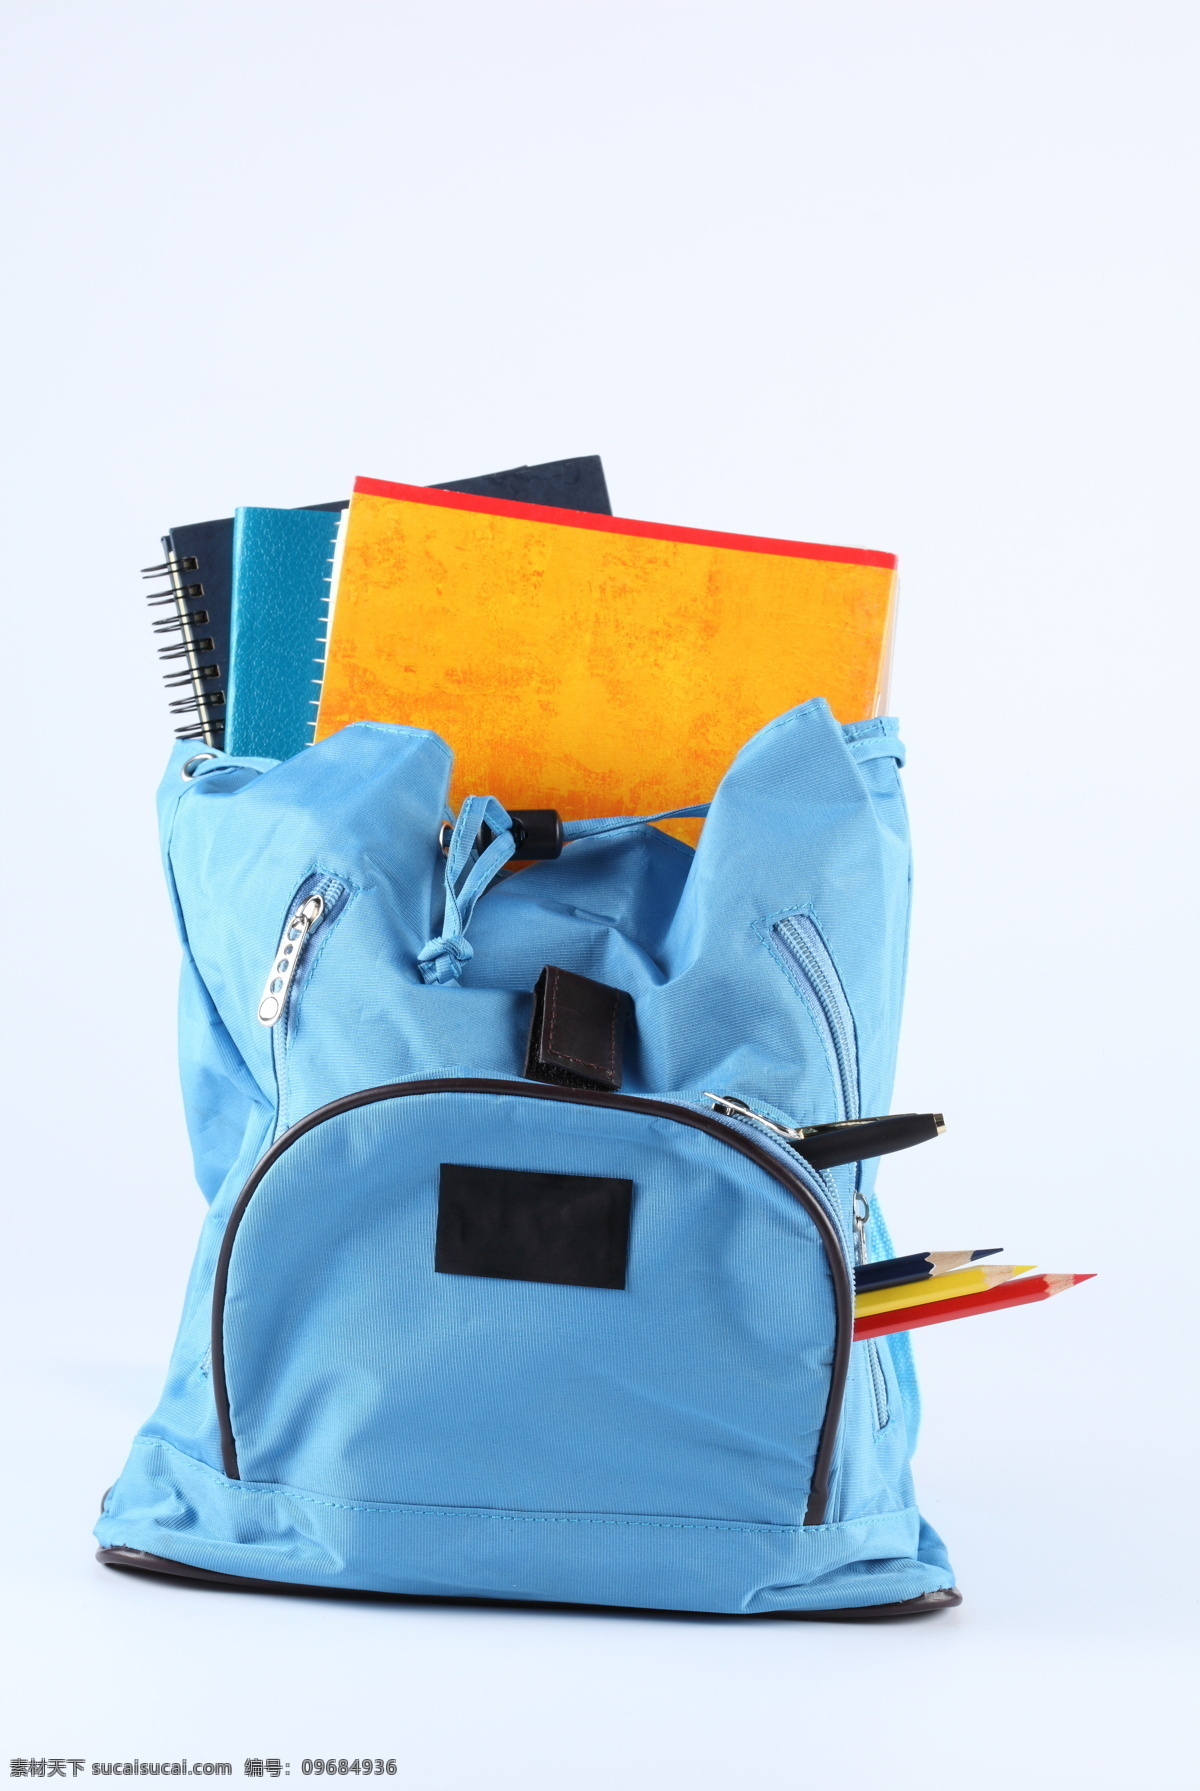 书包 学习用品 物品 开学 上学 笔记本 笔 圆珠笔 蓝色书包 办公学习 生活百科